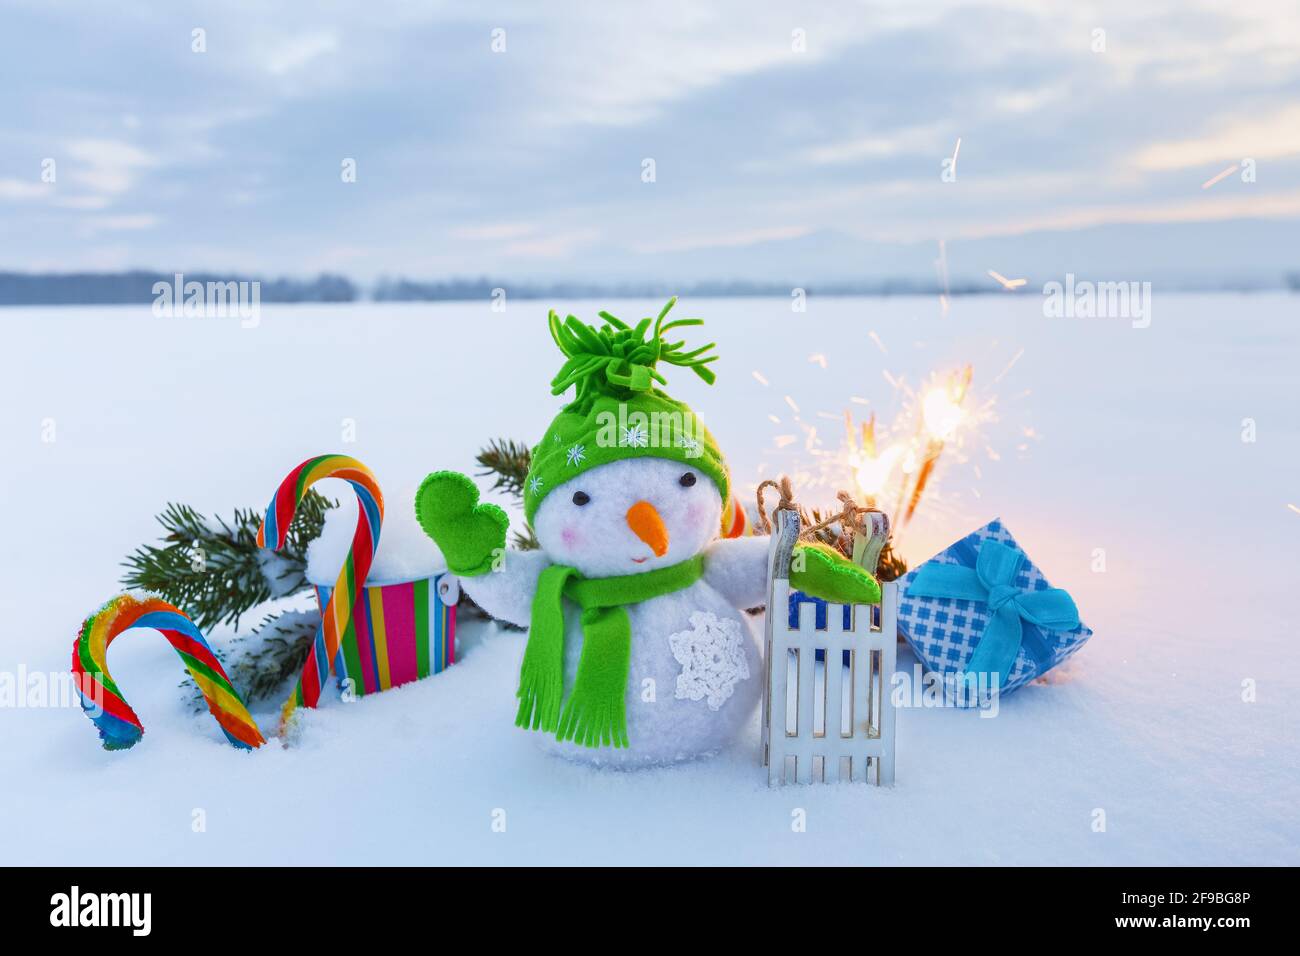 Pupazzo di neve divertente con slitta, caramelle colorate, scatola regalo e sparklers. Felice anno nuovo 2020. Composizione natalizia con fondo nevoso. Foto Stock